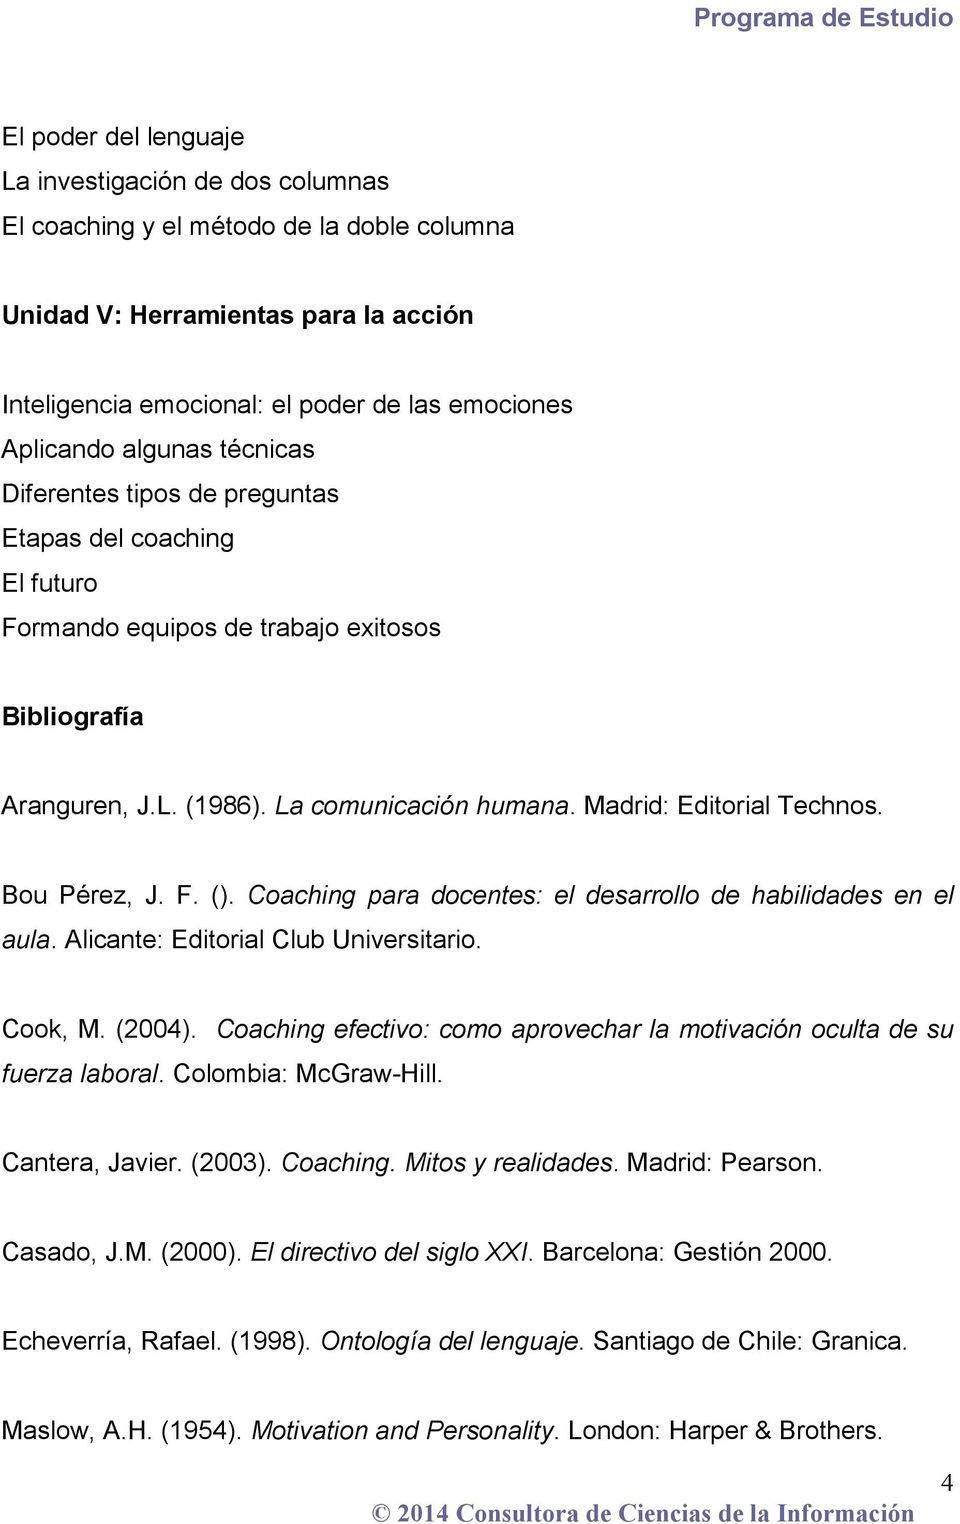 Madrid: Editorial Technos. Bou Pérez, J. F. (). Coaching para docentes: el desarrollo de habilidades en el aula. Alicante: Editorial Club Universitario. Cook, M. (2004).